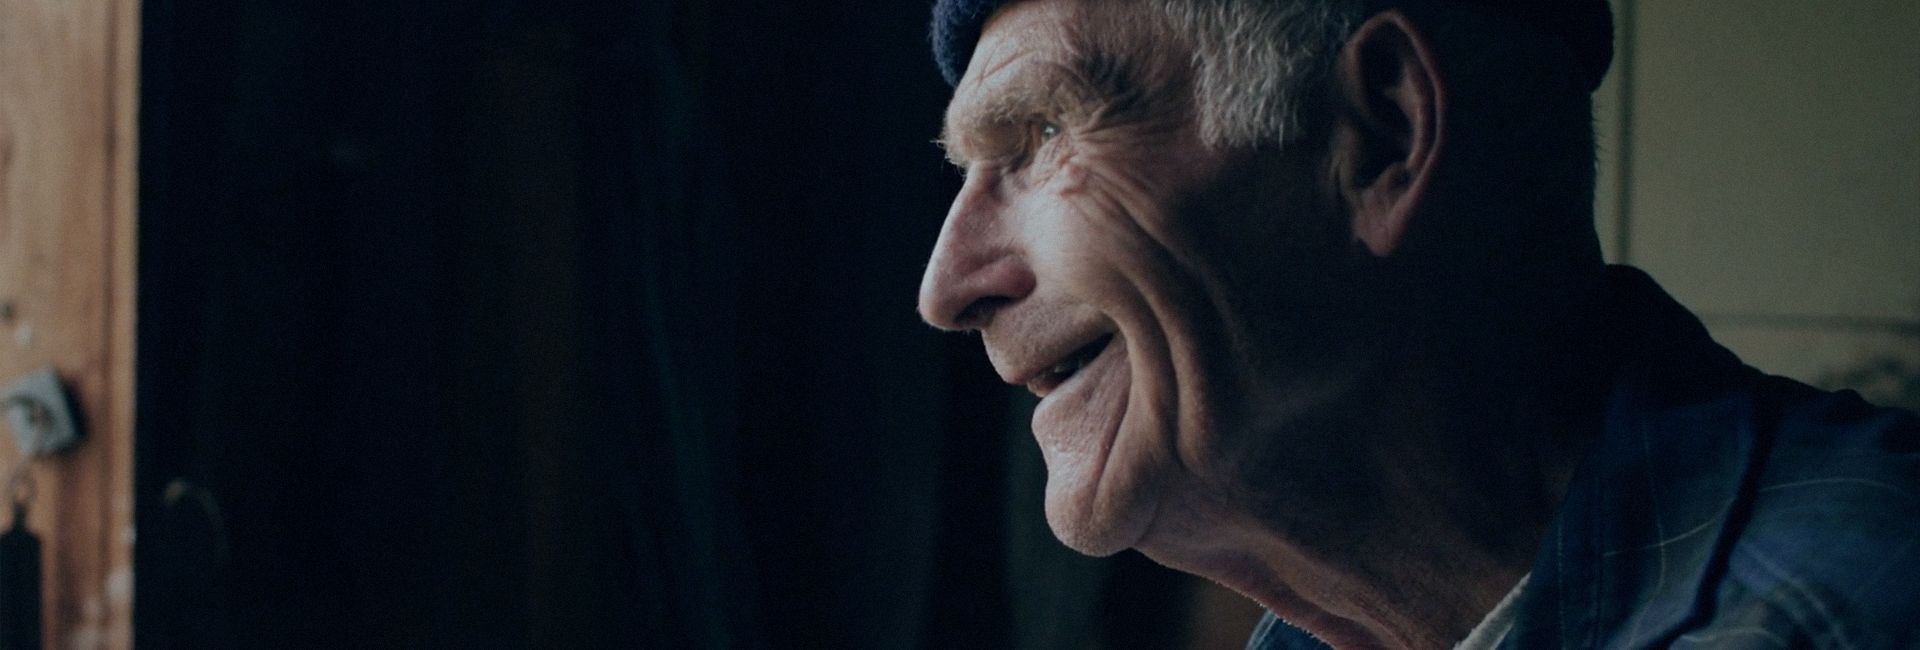 En eldre mann ser smilende ut vinduet